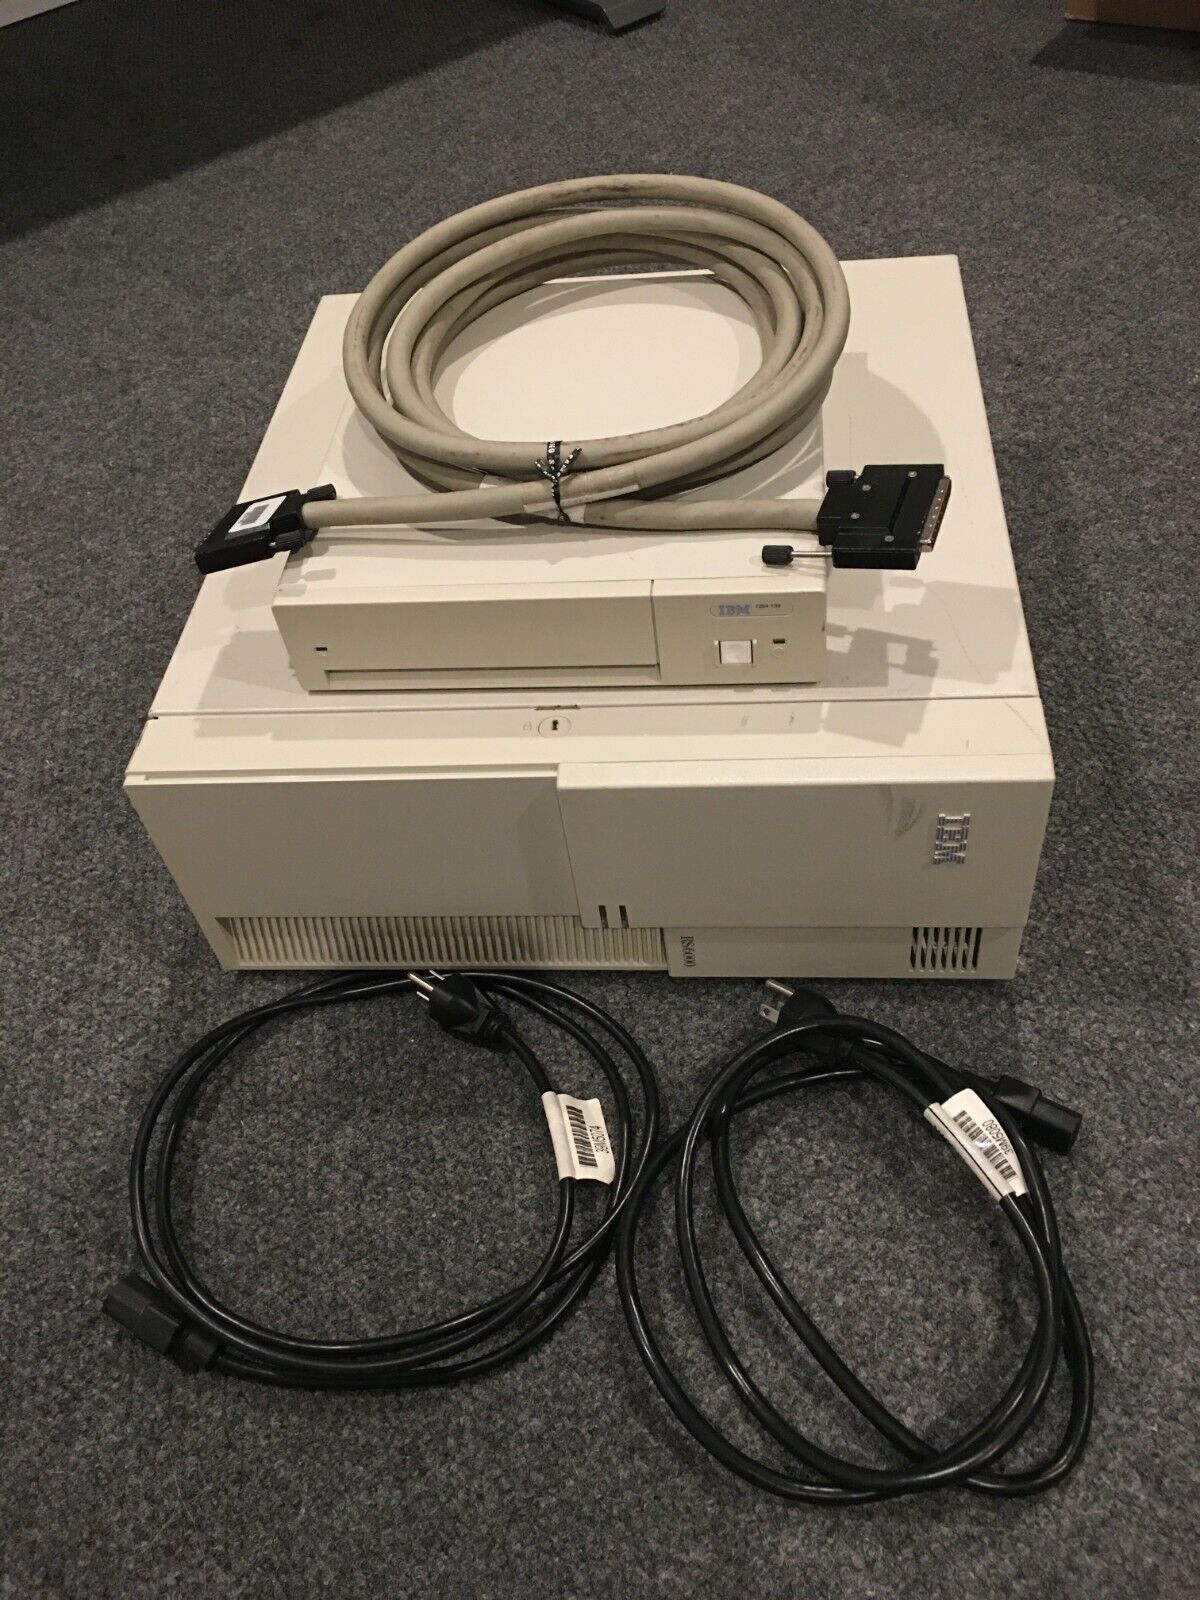 IBM 7043-140 200MHz PowerPC 604e + 8Gb External SCSI Drive